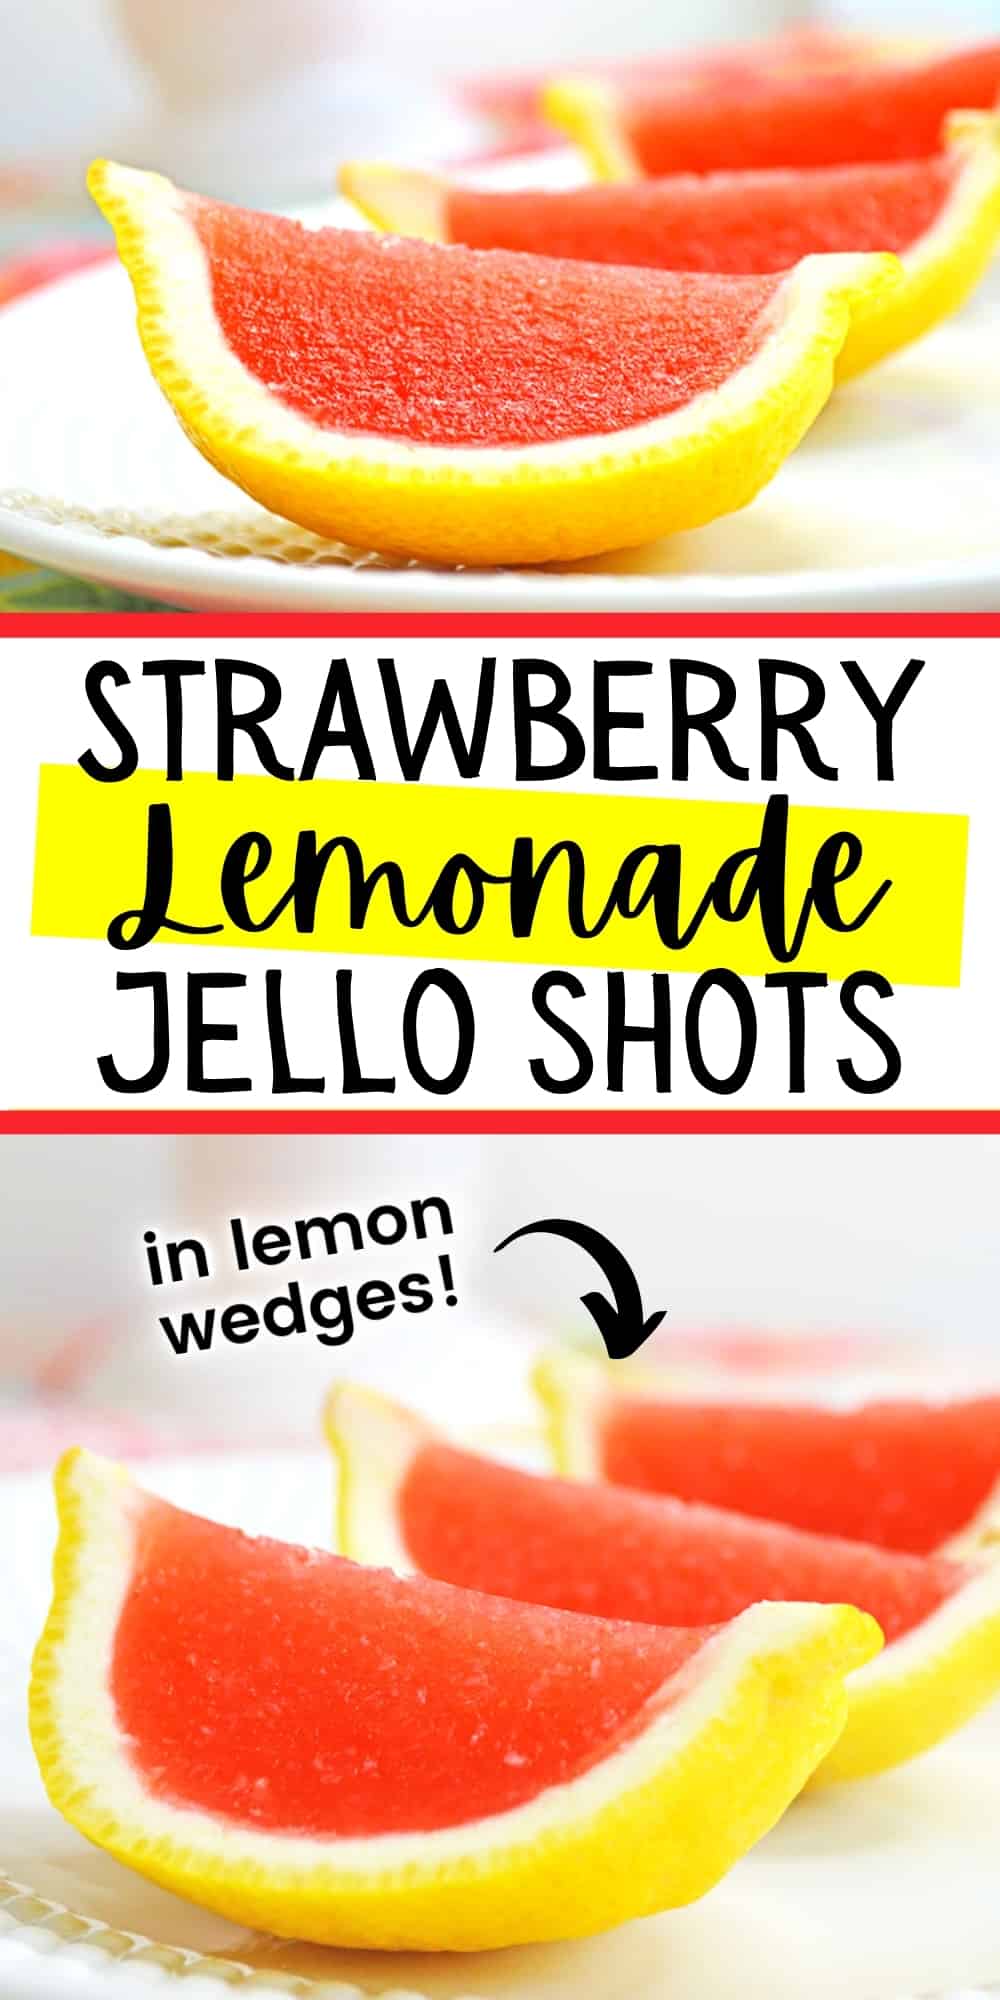 Strawberry Lemonade Jello Shots in Lemon wedges